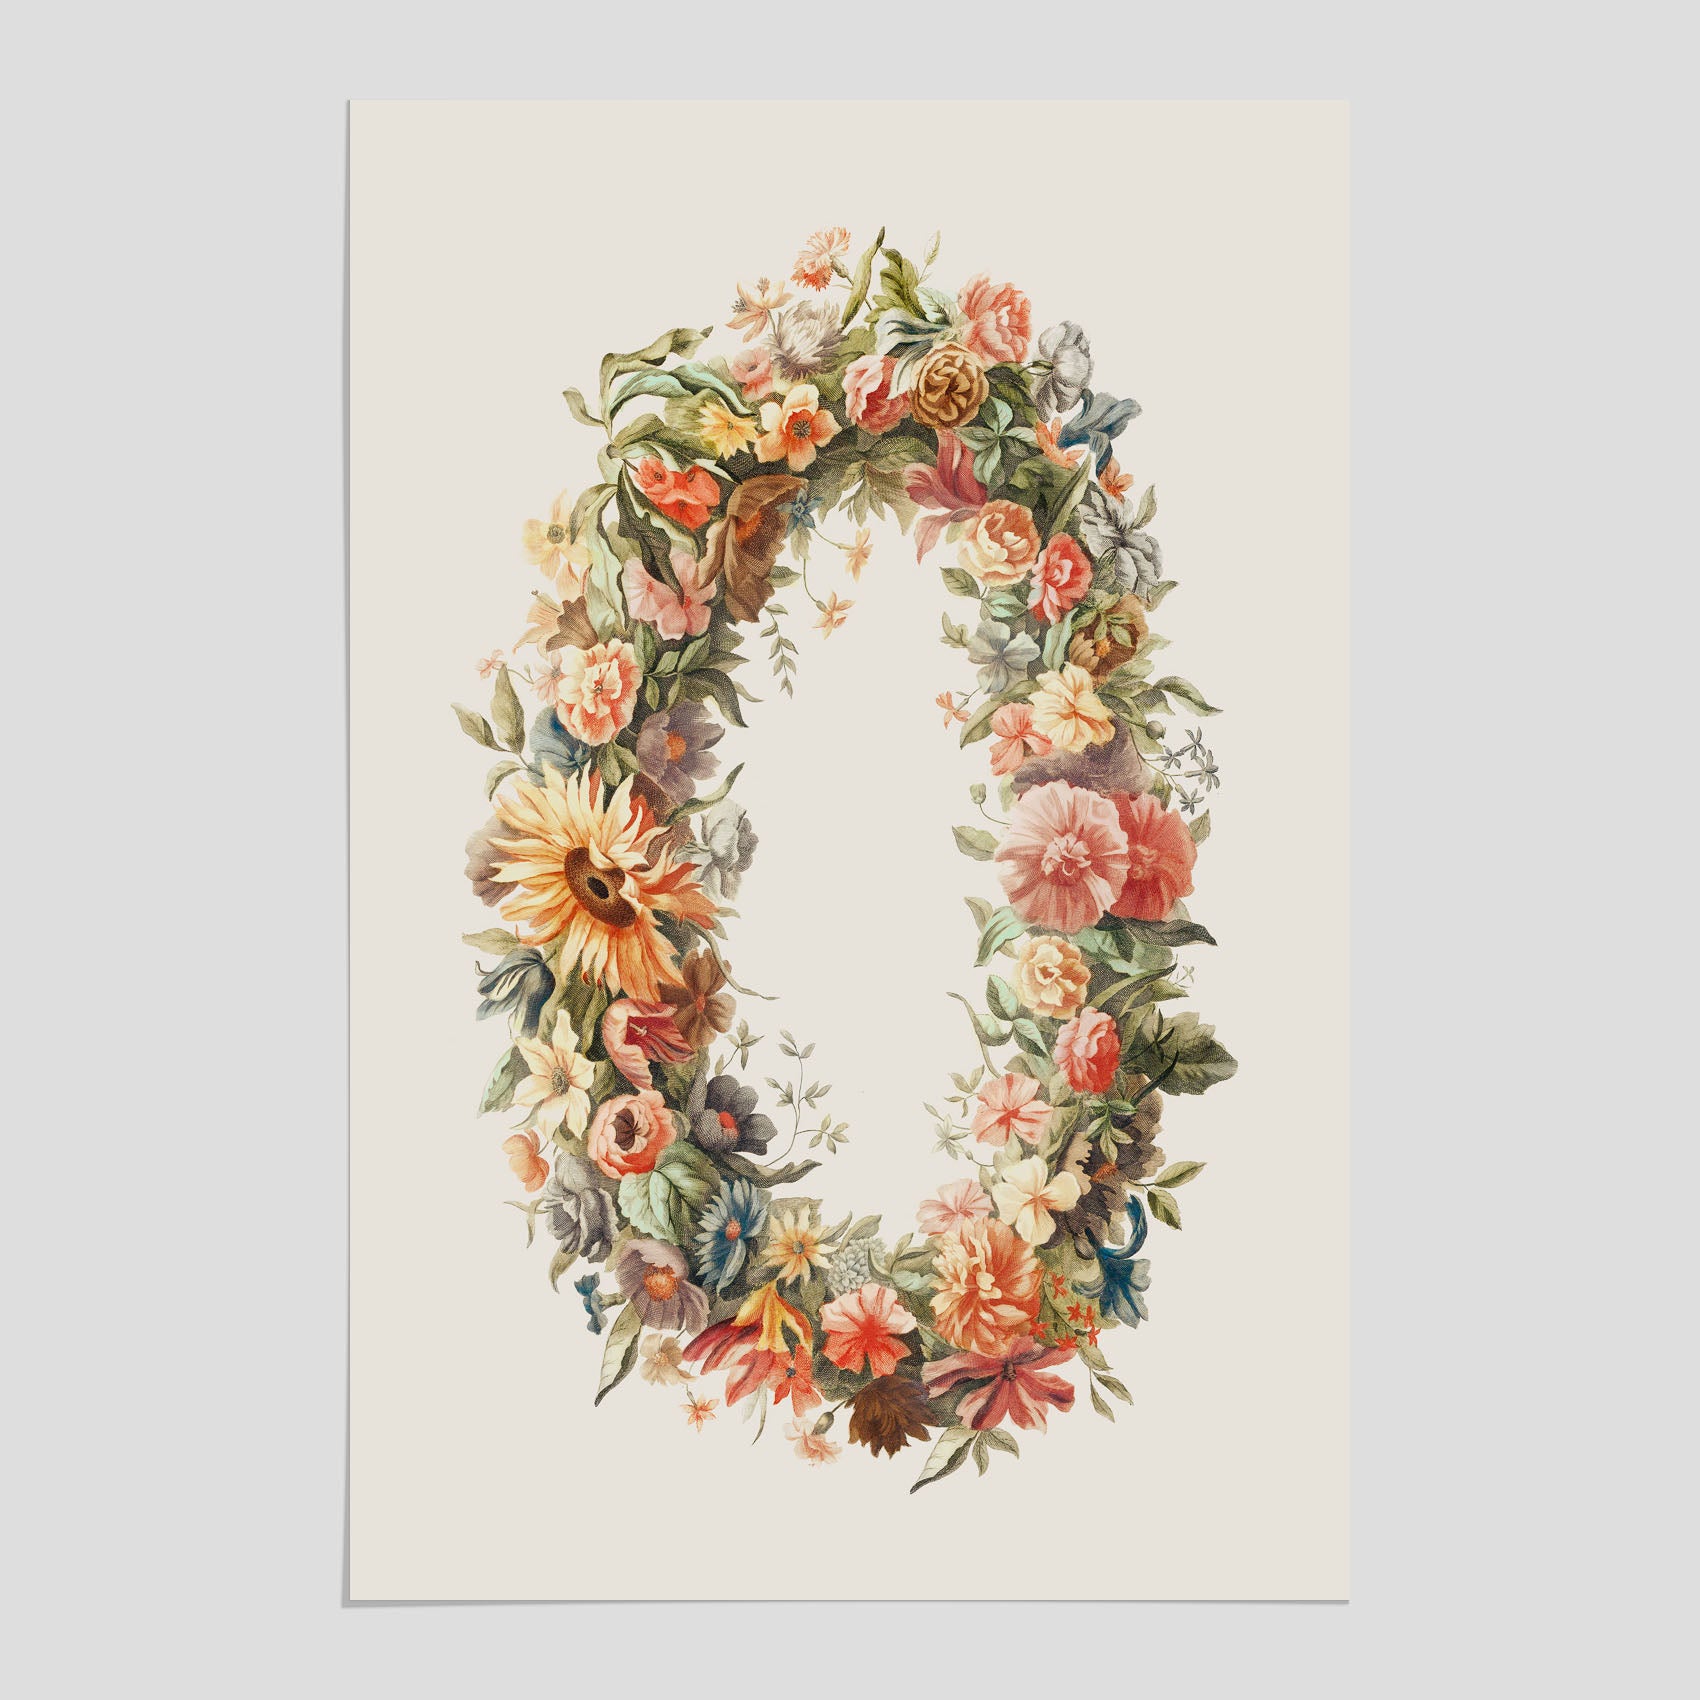 Blomkrans poster  – Botanisk poster, vintageposter med blommor, midsommar